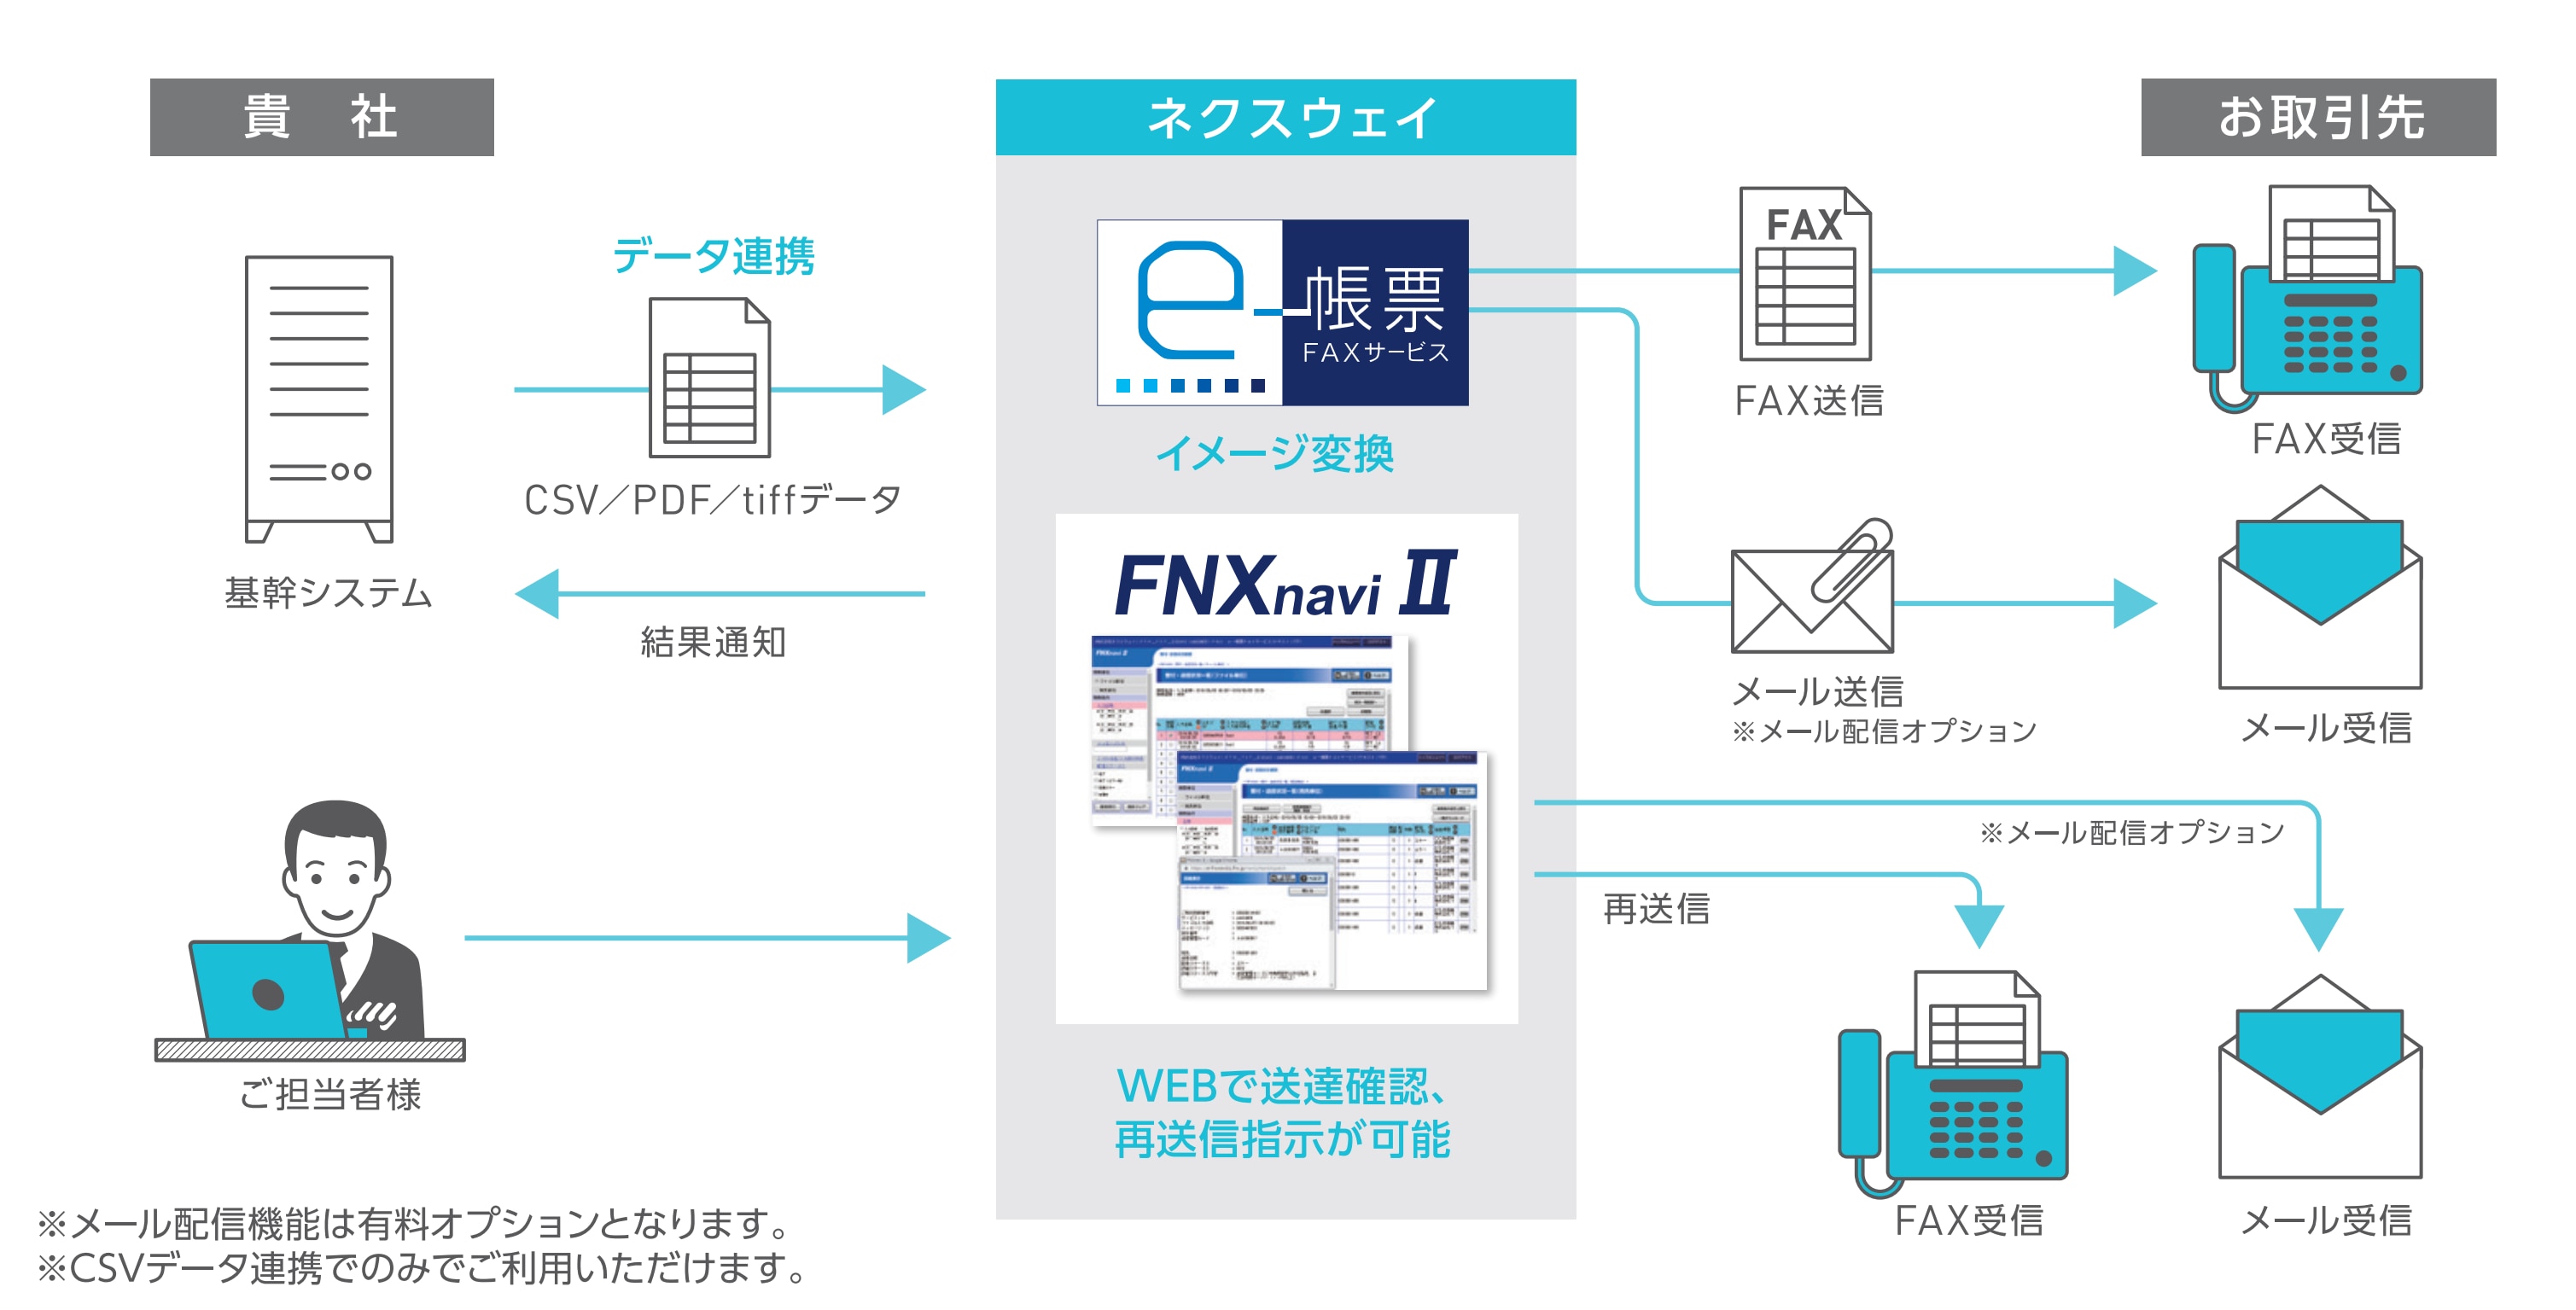 クラウド型FAX送信サービス FNX e-帳票FAXサービス